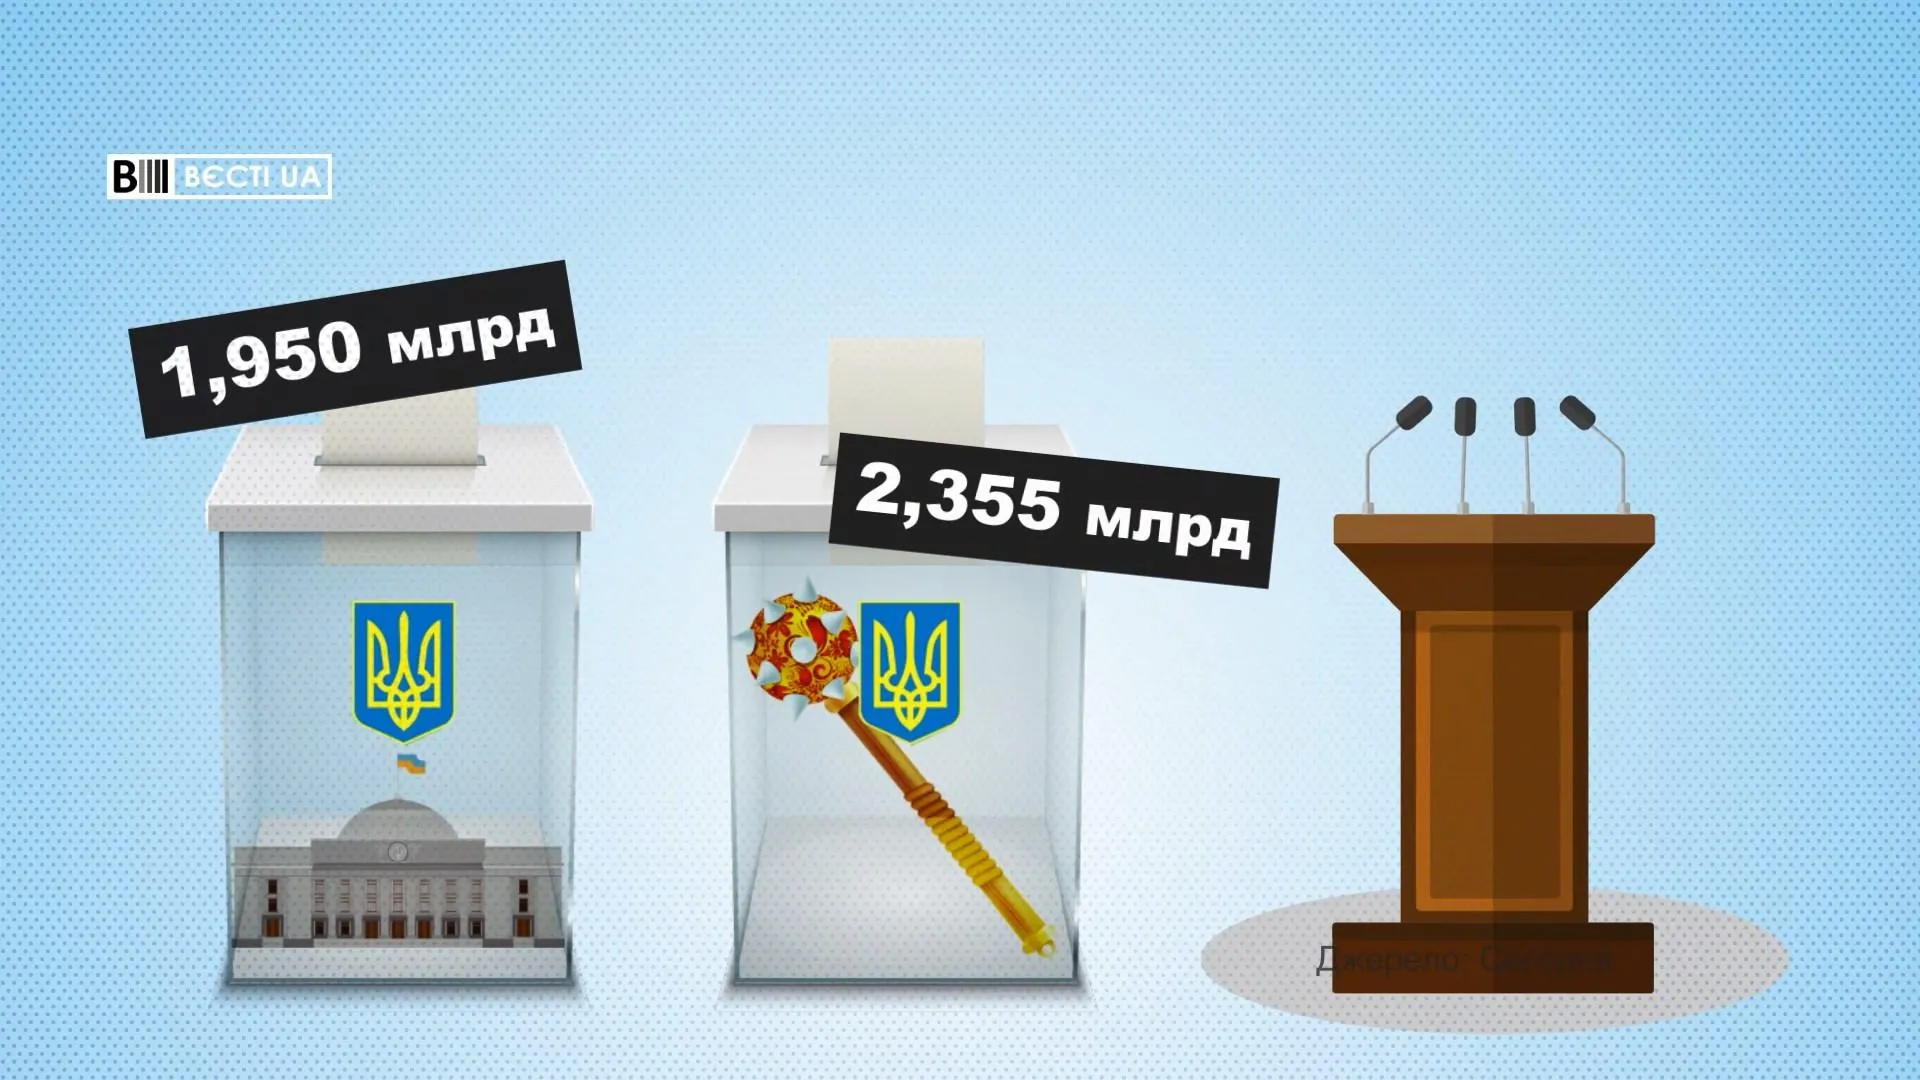 Кожен українець заплатить 250 гривень на утримання органів влади